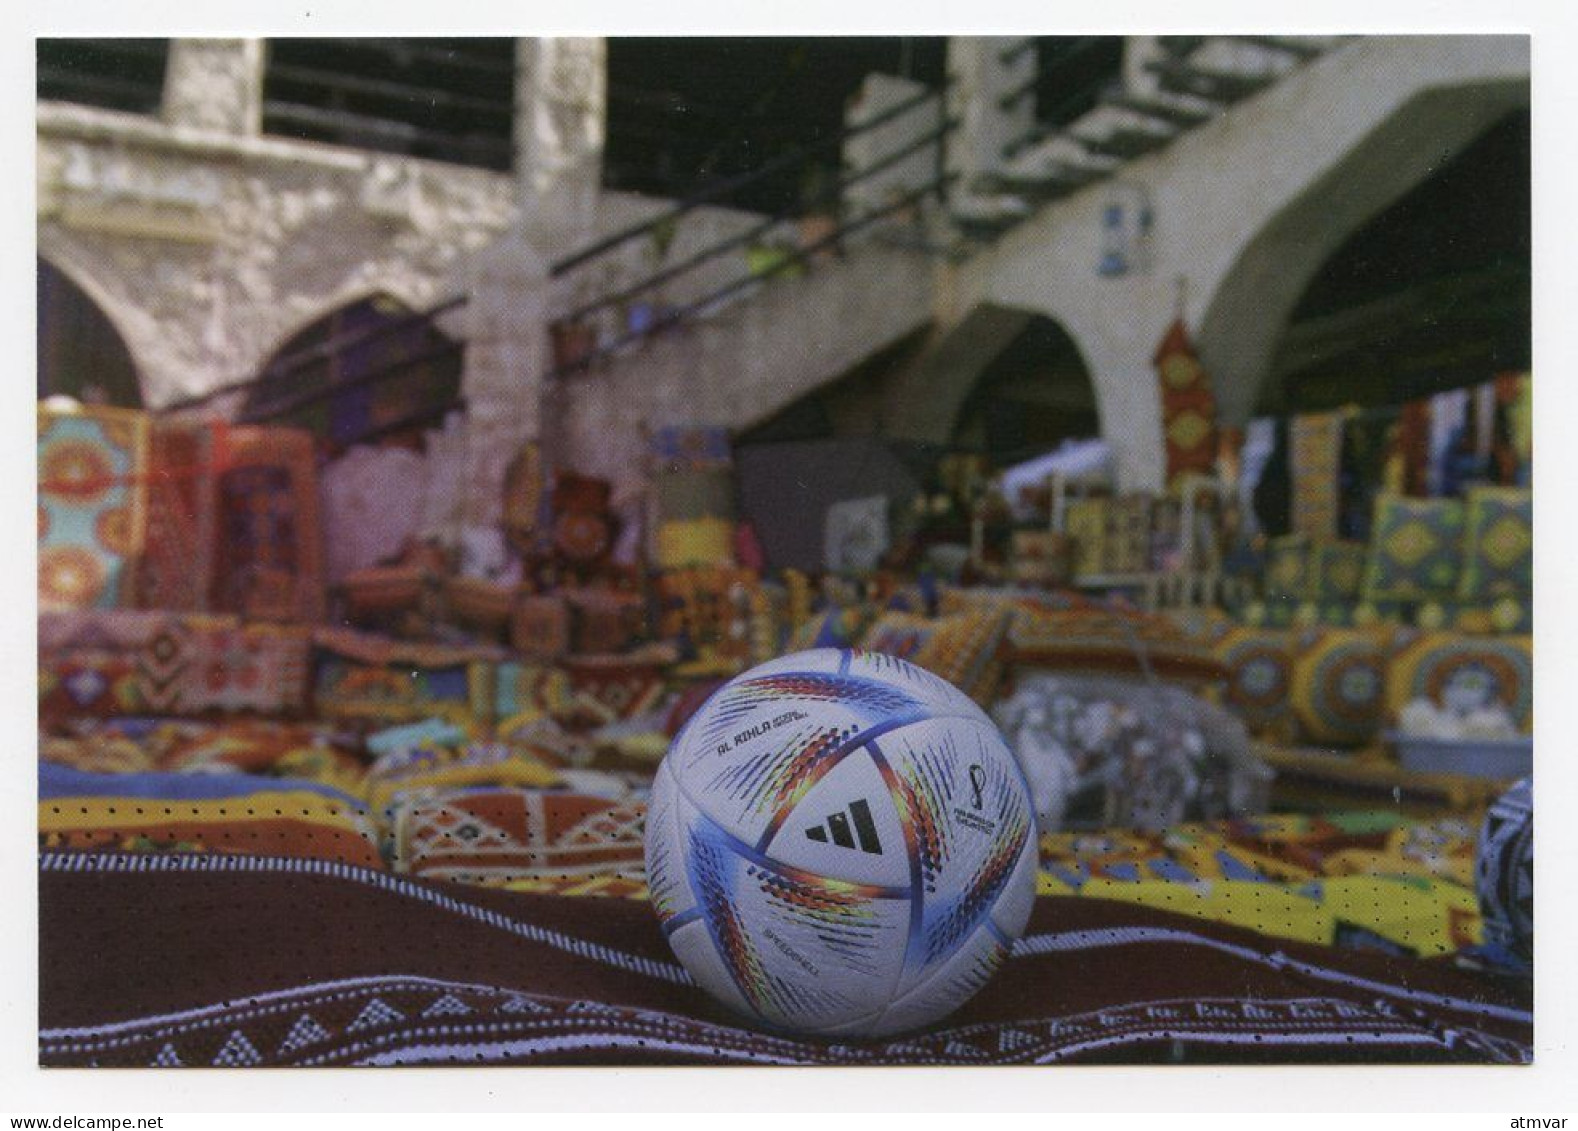 QATAR (2022) Postcard - FIFA WORLD CUP QATAR 2022 Official Match Ball, Balón, Ballon, Football, Futbol - Qatar